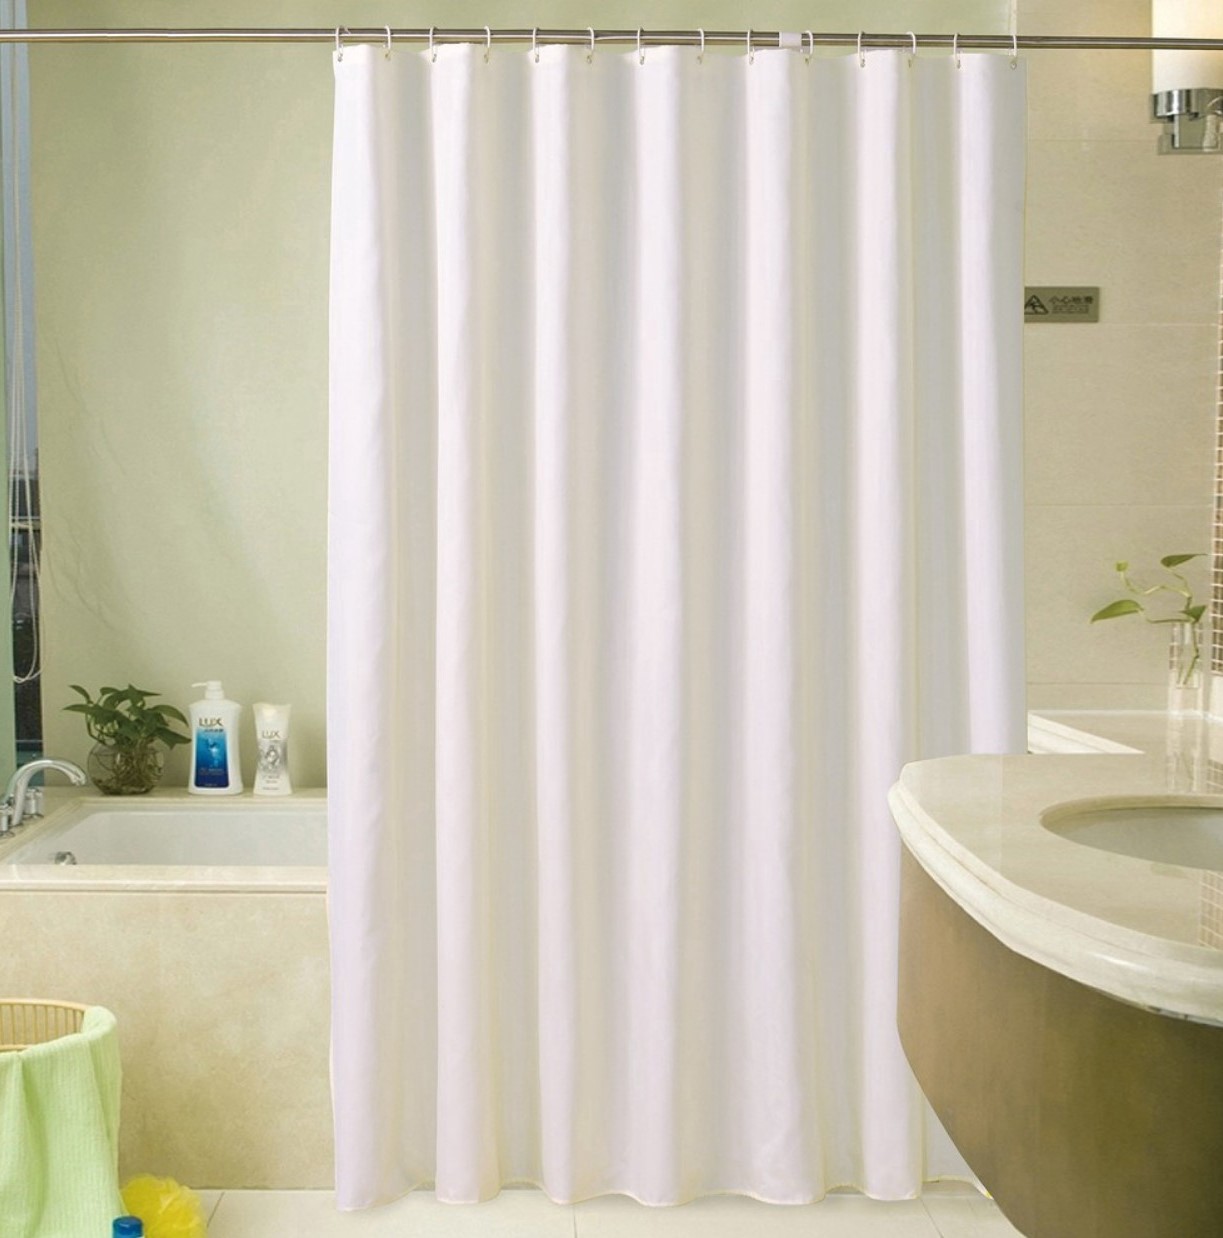 Nếu bạn đang tìm kiếm một rèm phòng tắm không thấm nước, không chỉ chất lượng mà còn mang đến vẻ đẹp sang trọng cho không gian của bạn, thì rèm màu trắng chắc chắn là lựa chọn tuyệt vời. Hãy khám phá những hình ảnh đẹp mắt của sản phẩm.